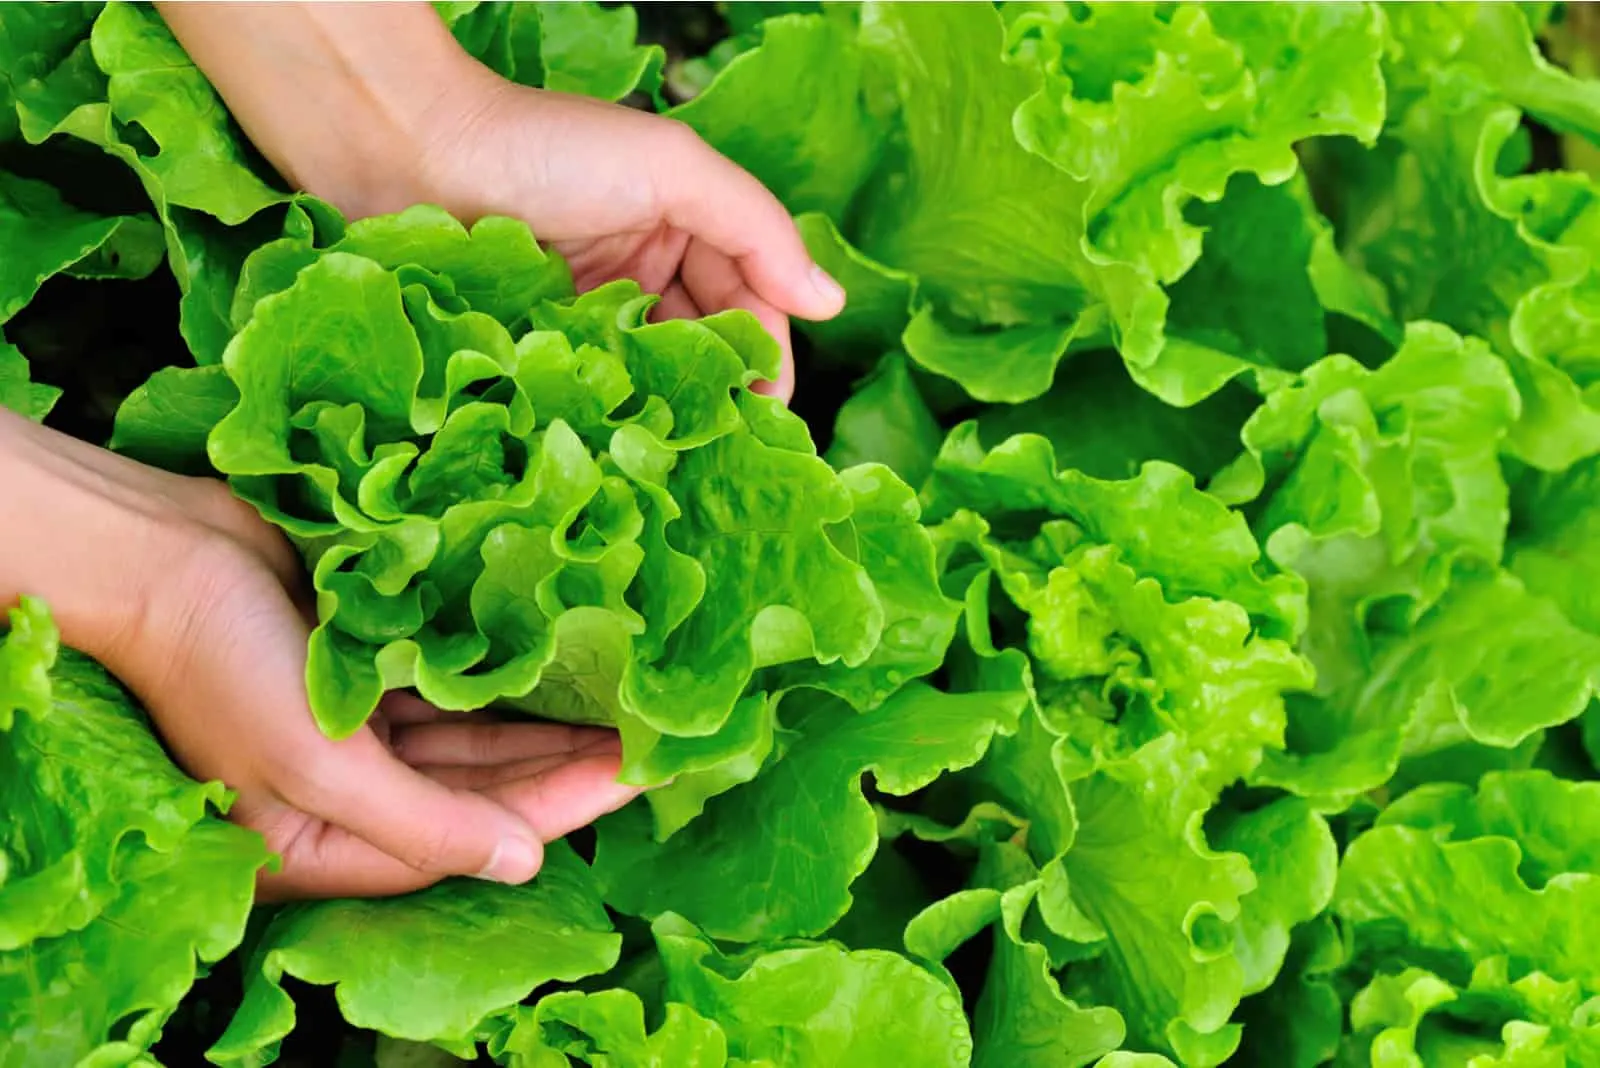 hands holding lettuce